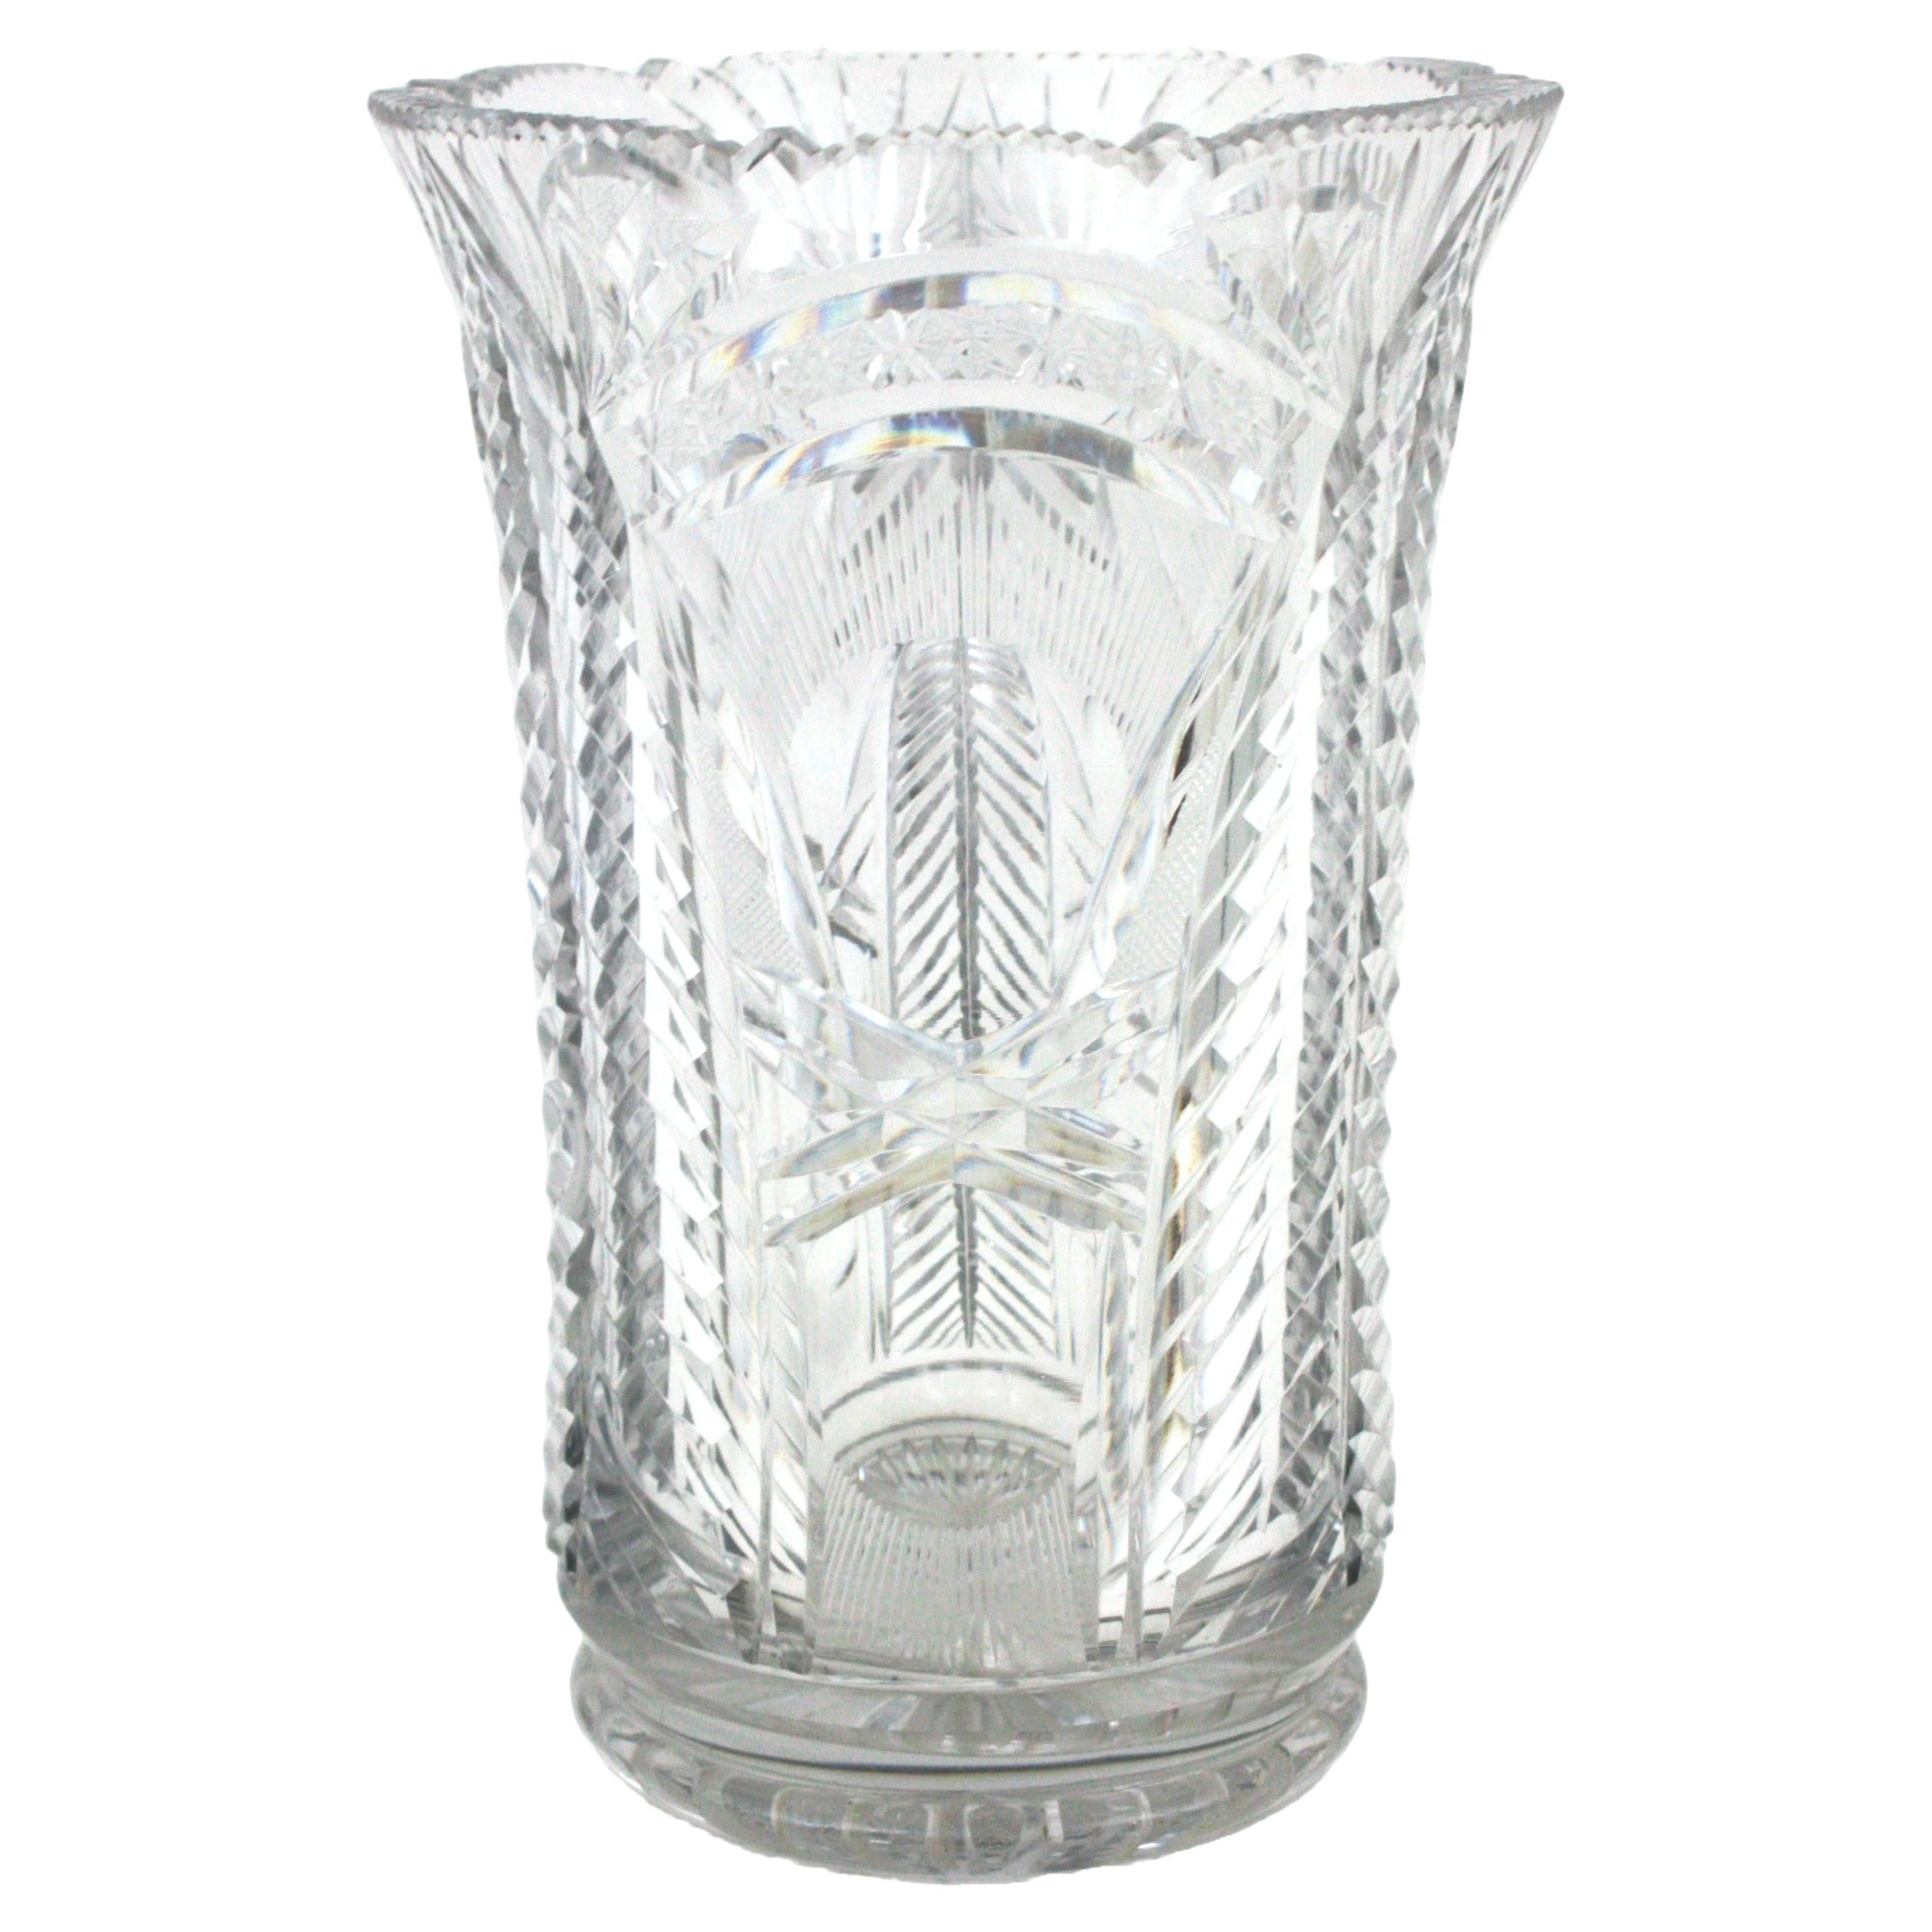 Auffällige Vase aus geschliffenem Kristall mit Wellenschliff. Spanien, 1930er Jahre.
Diese Art Deco Vasen ist fein ausgeführt mit sehr detaillierten Schnitt cristal Muster gründlich.
Sie ist von allen Seiten schön, hat einen gewellten Rand und eine